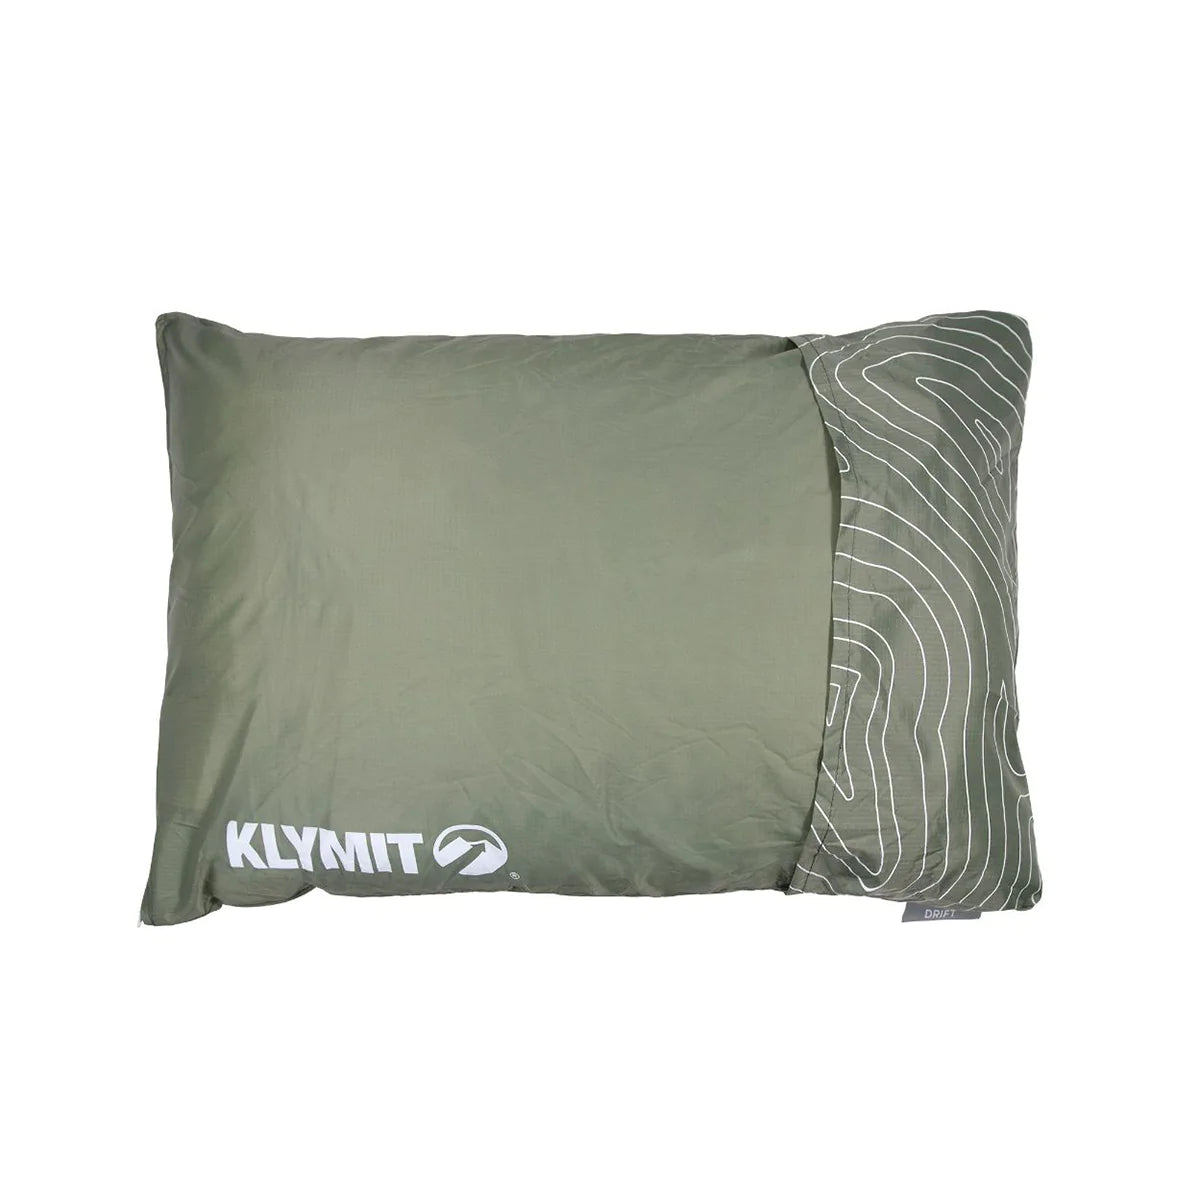 Drift Camping pillow